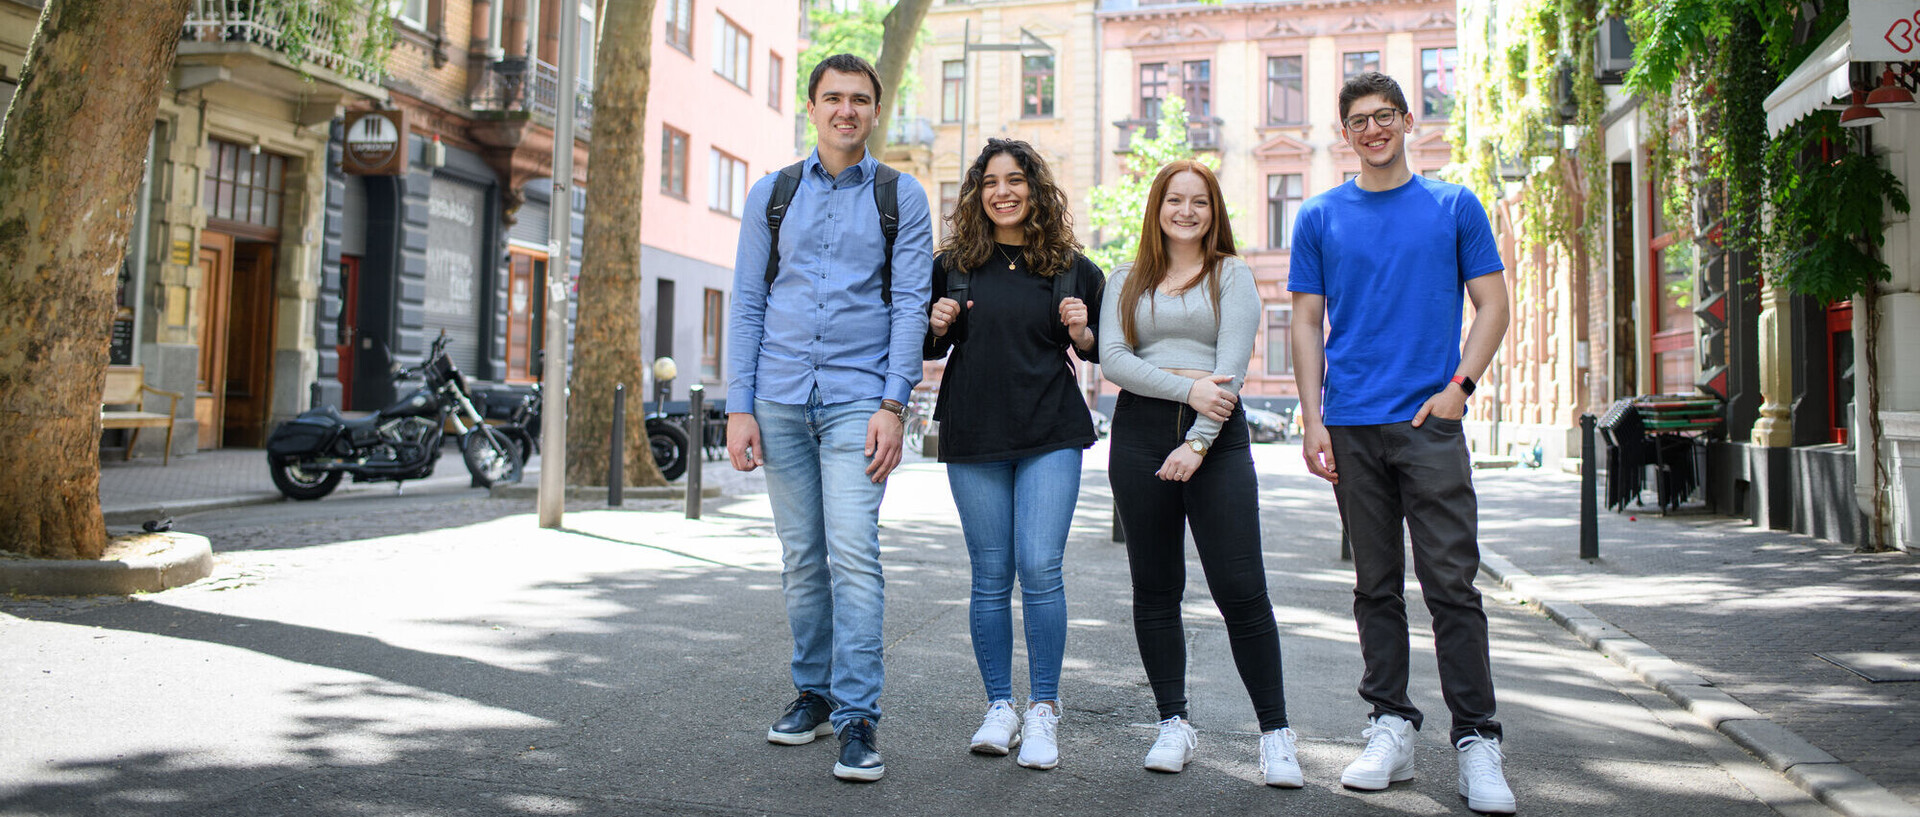 Vier lachende Studierende auf einer verkehrsberuhigten Straße im Mannheimer Jungbusch